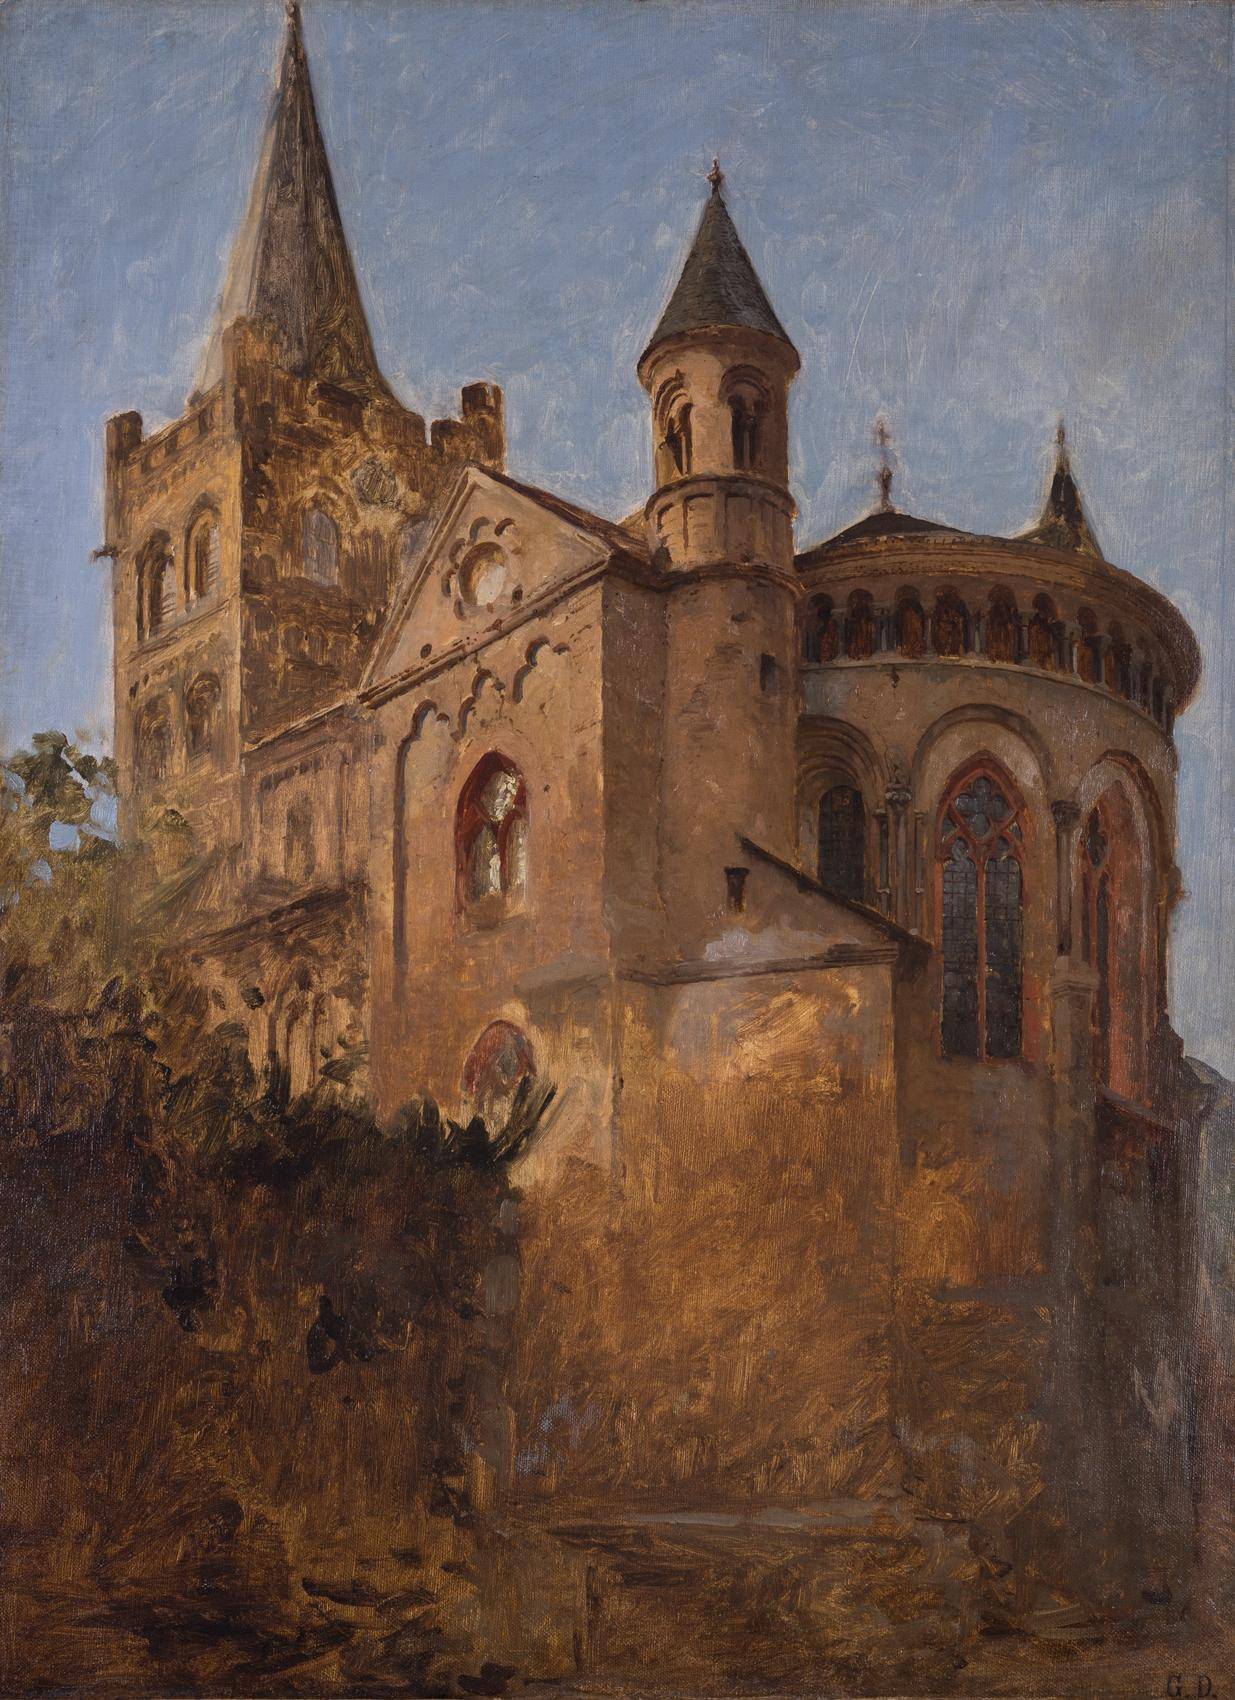 Die spätromanische Kirche St. Peter in Bacharach